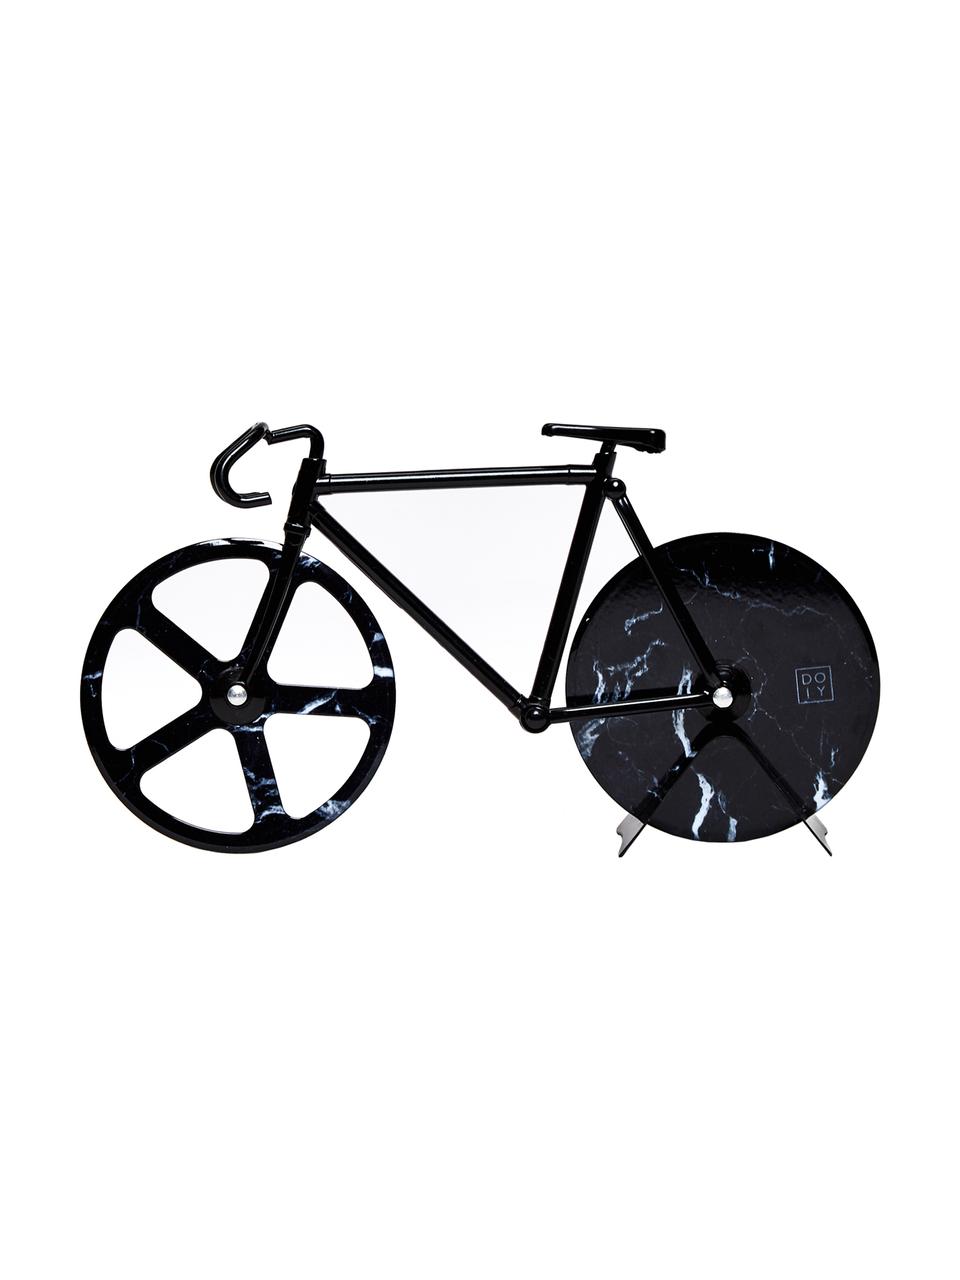 Schwarzer Pizzaschneider Velo im Fahrraddesign aus Edelstahl, Edelstahl, beschichtet, Schwarz, marmoriert, 23 x 13 cm